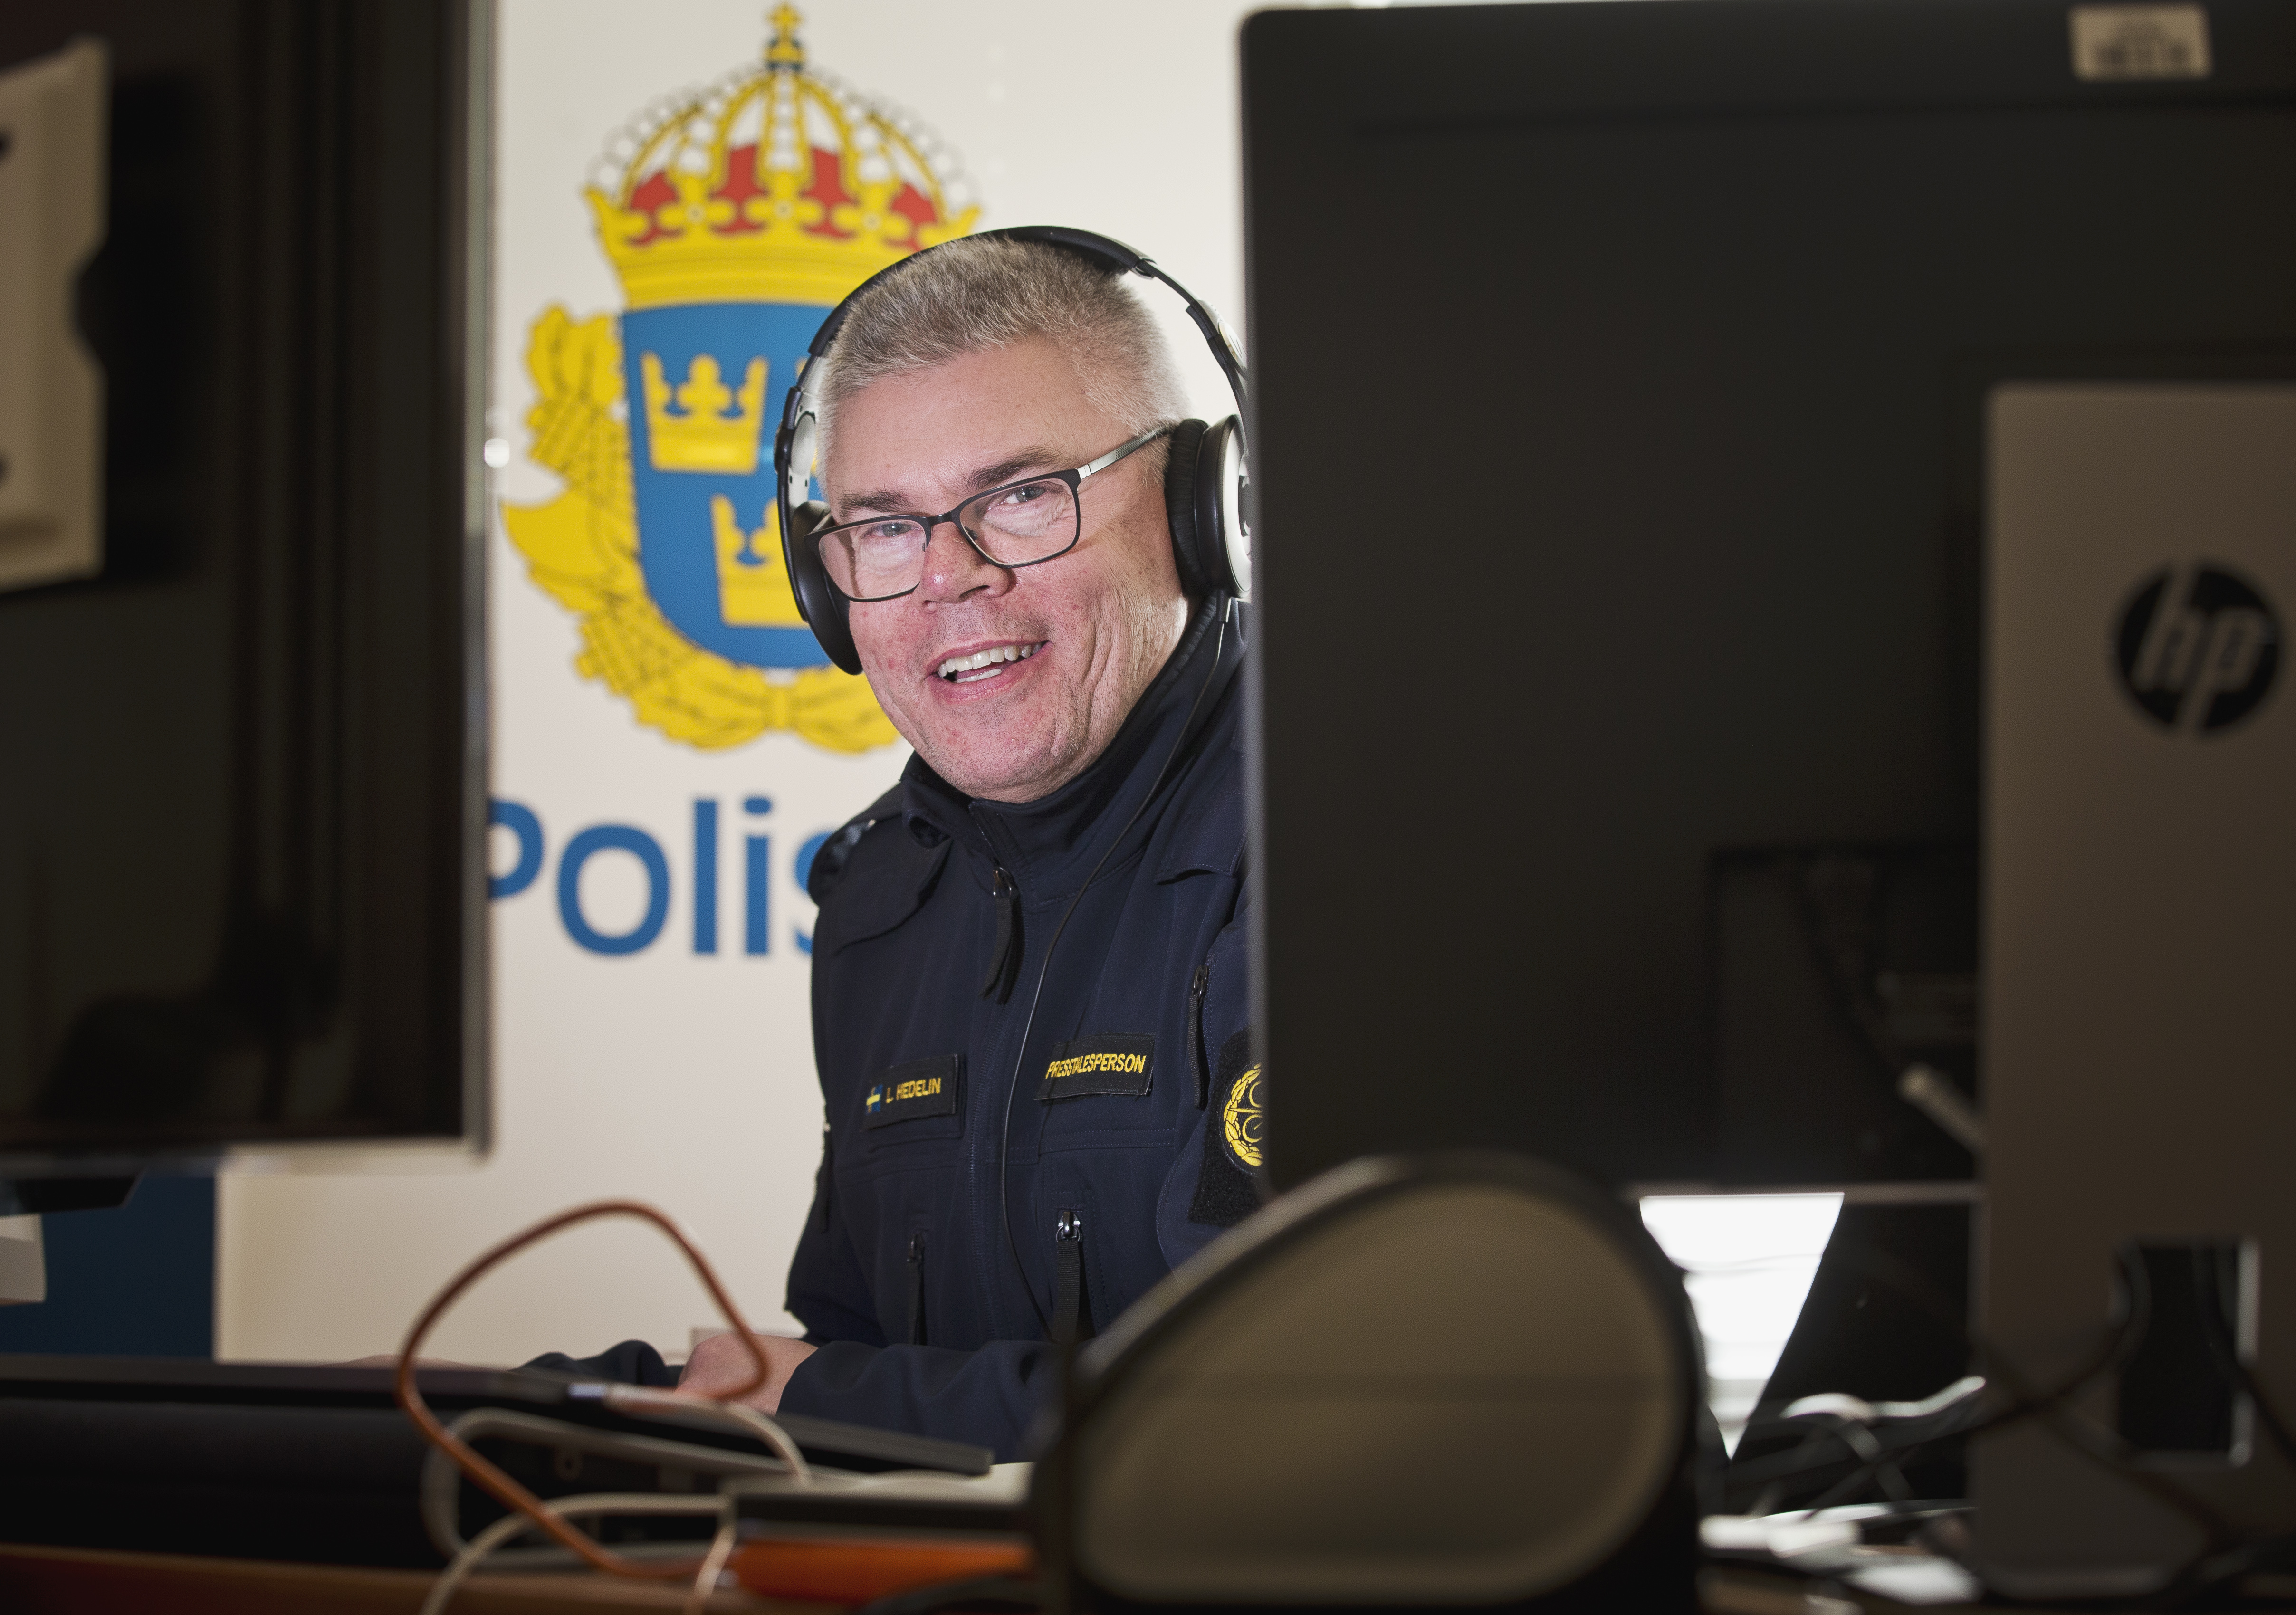 Lars Hedelin fixar Polisens julhälsning – hård press efter viralt klipp med Basshunter bild bild